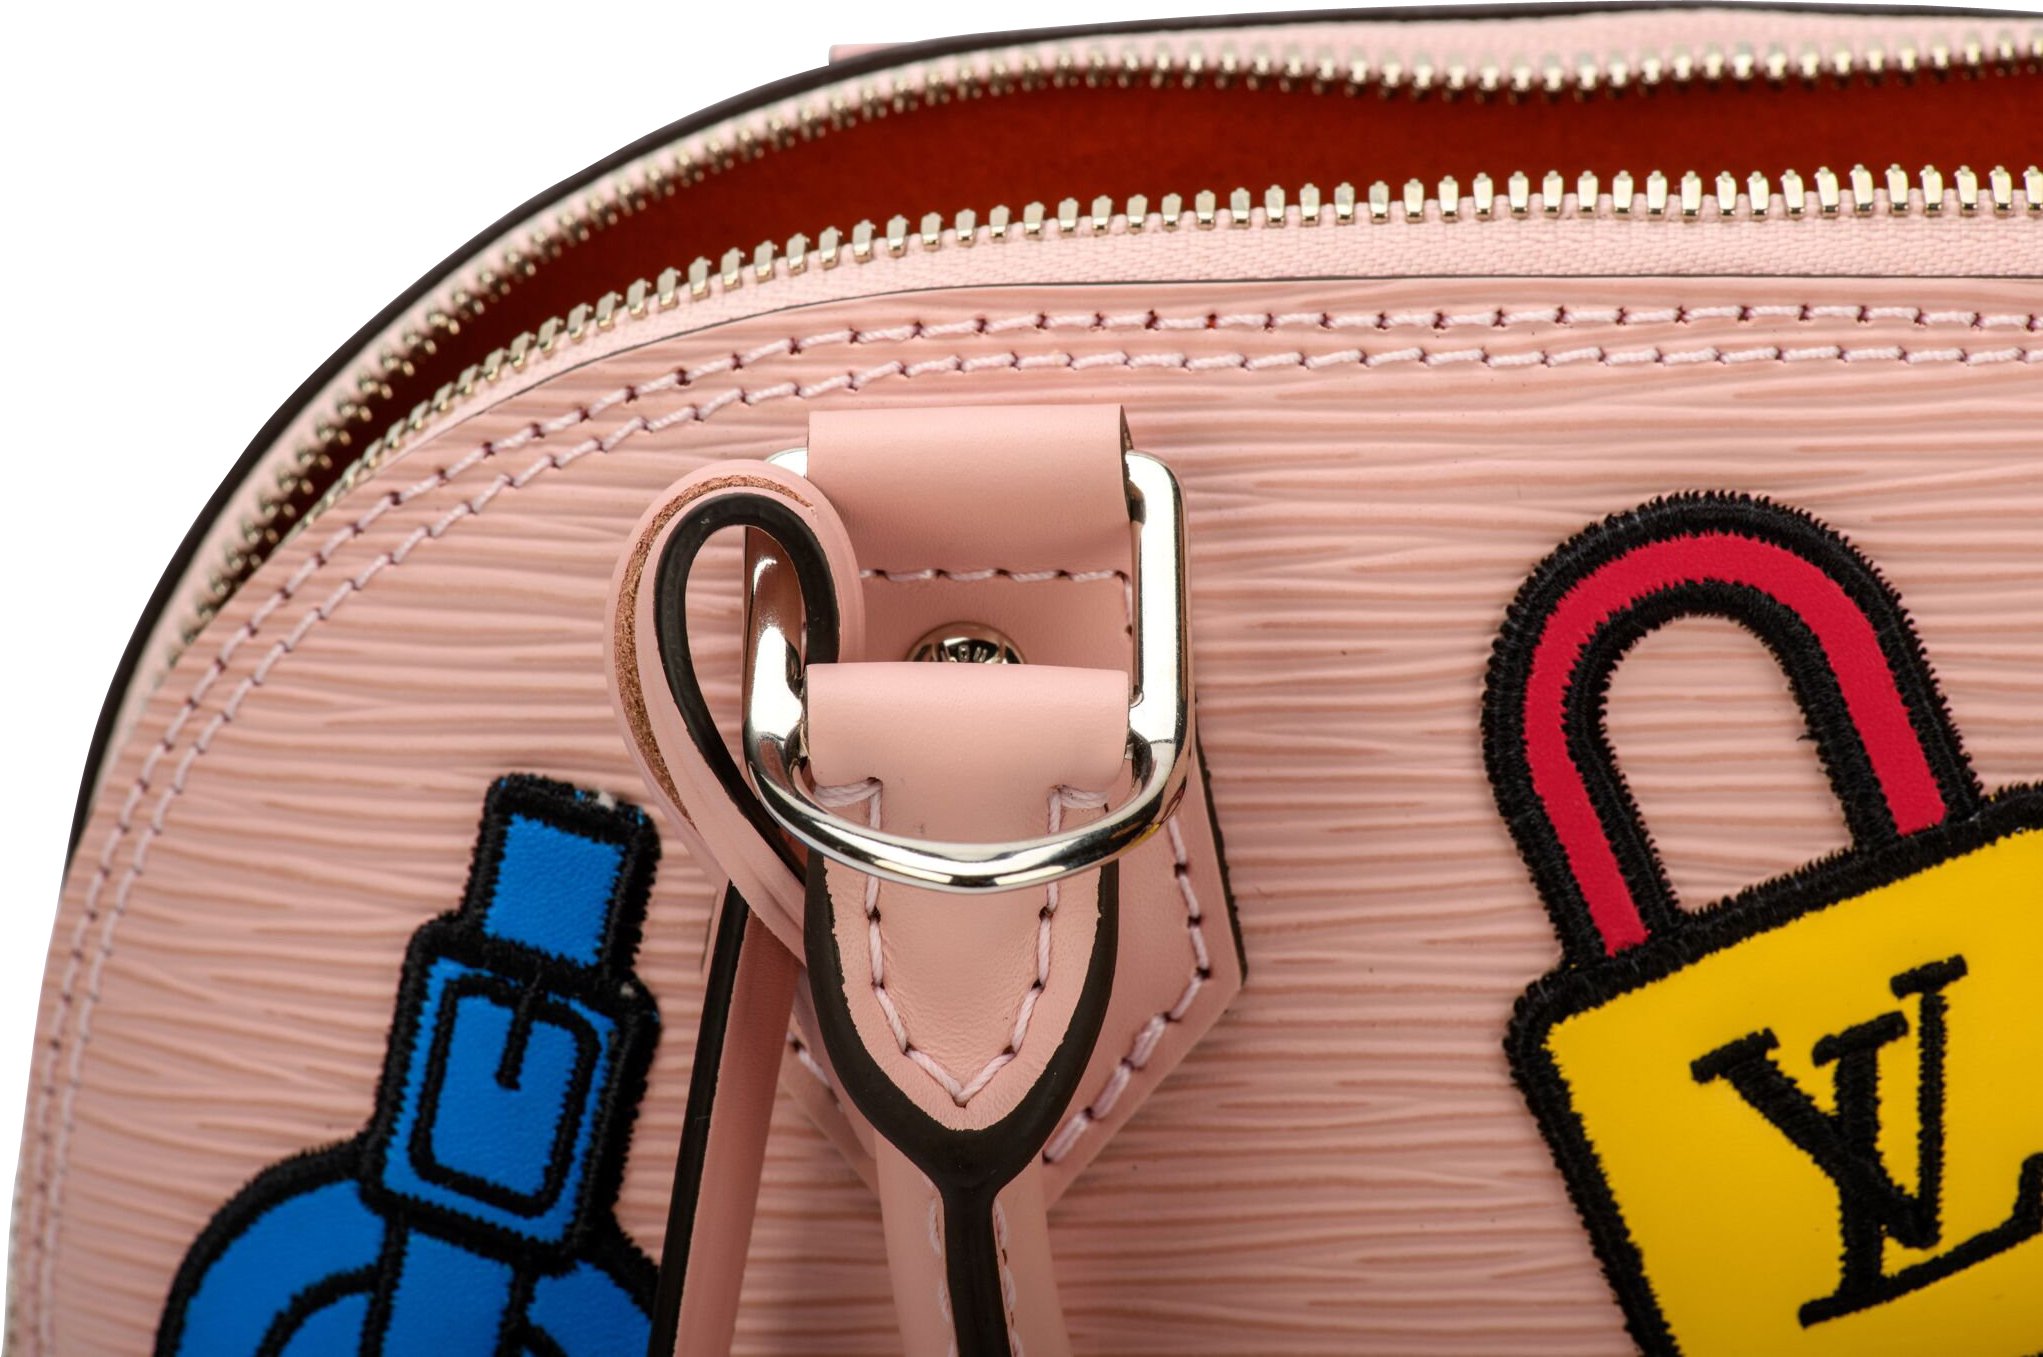 COLLECTOR Louis Vuitton Alma Sticker Animation handbag by